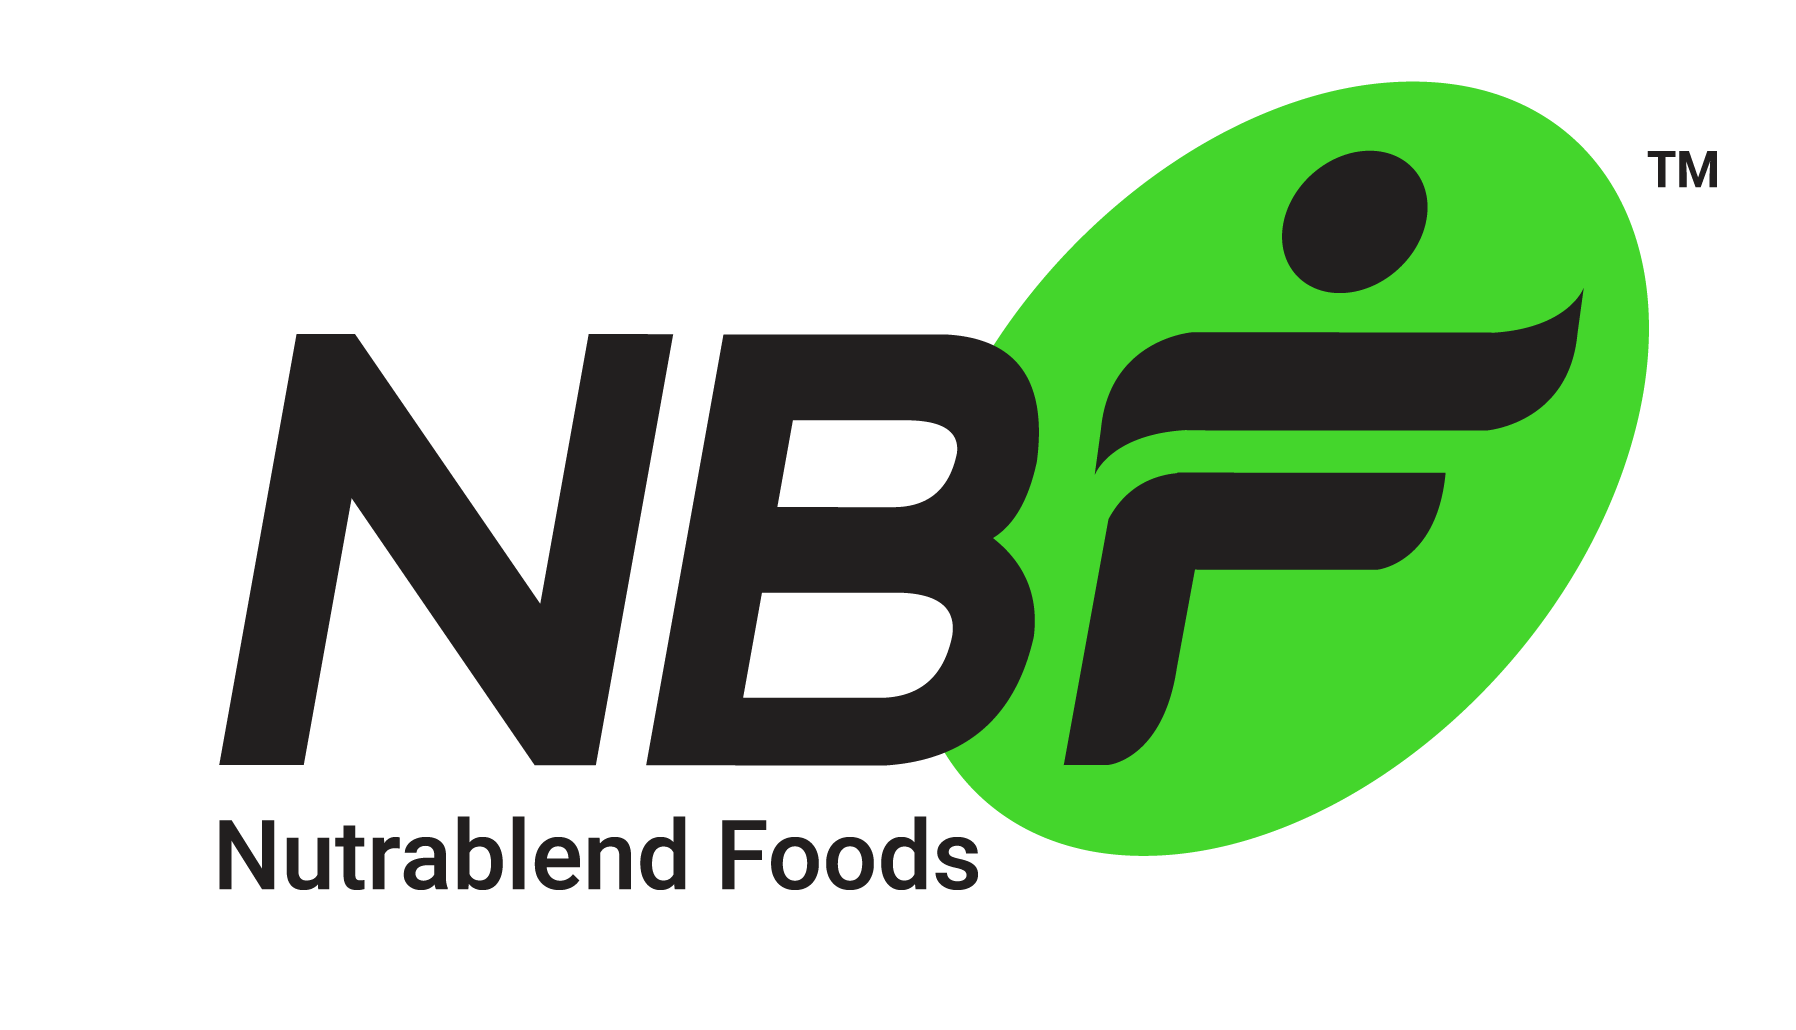 NUTRABLEND FOODS